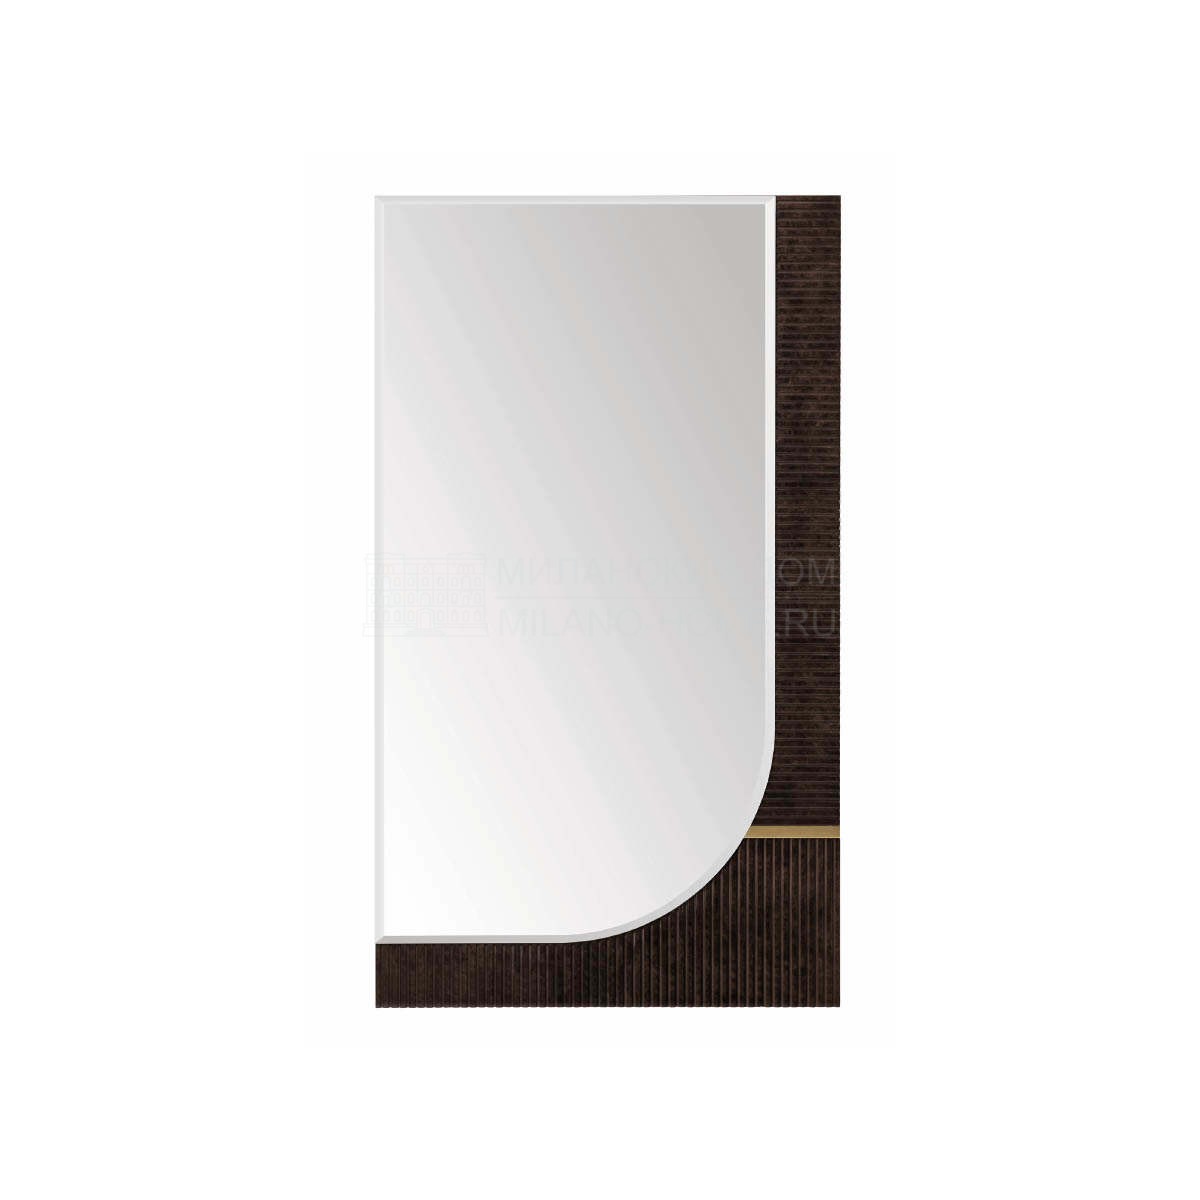 Зеркало настенное Eclipse mirror из Италии фабрики TURRI